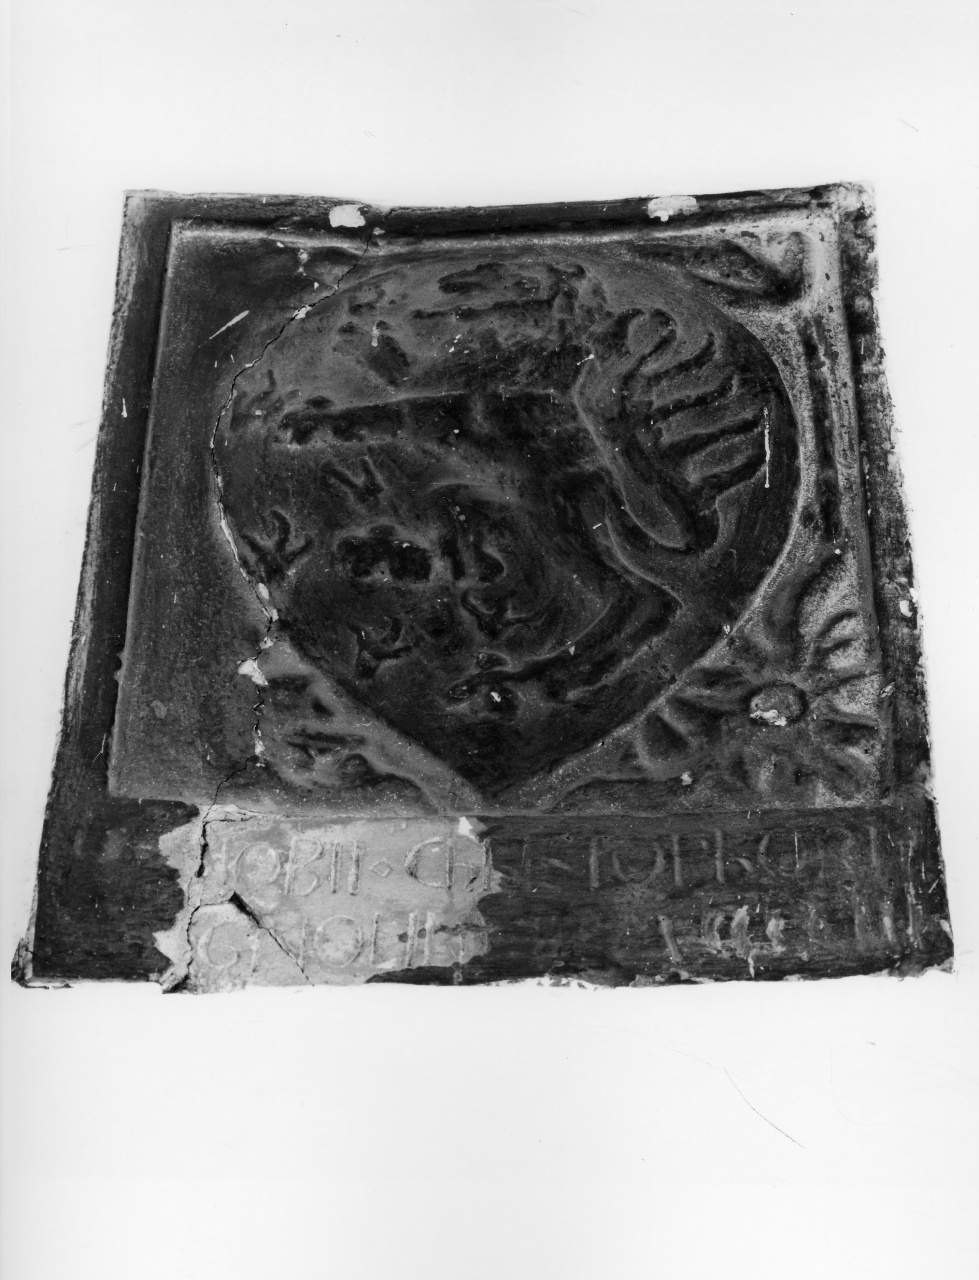 stemma gentilizio di Zanobi di Cristoforo di Magnolino (rilievo) - produzione fiorentina (sec. XV)